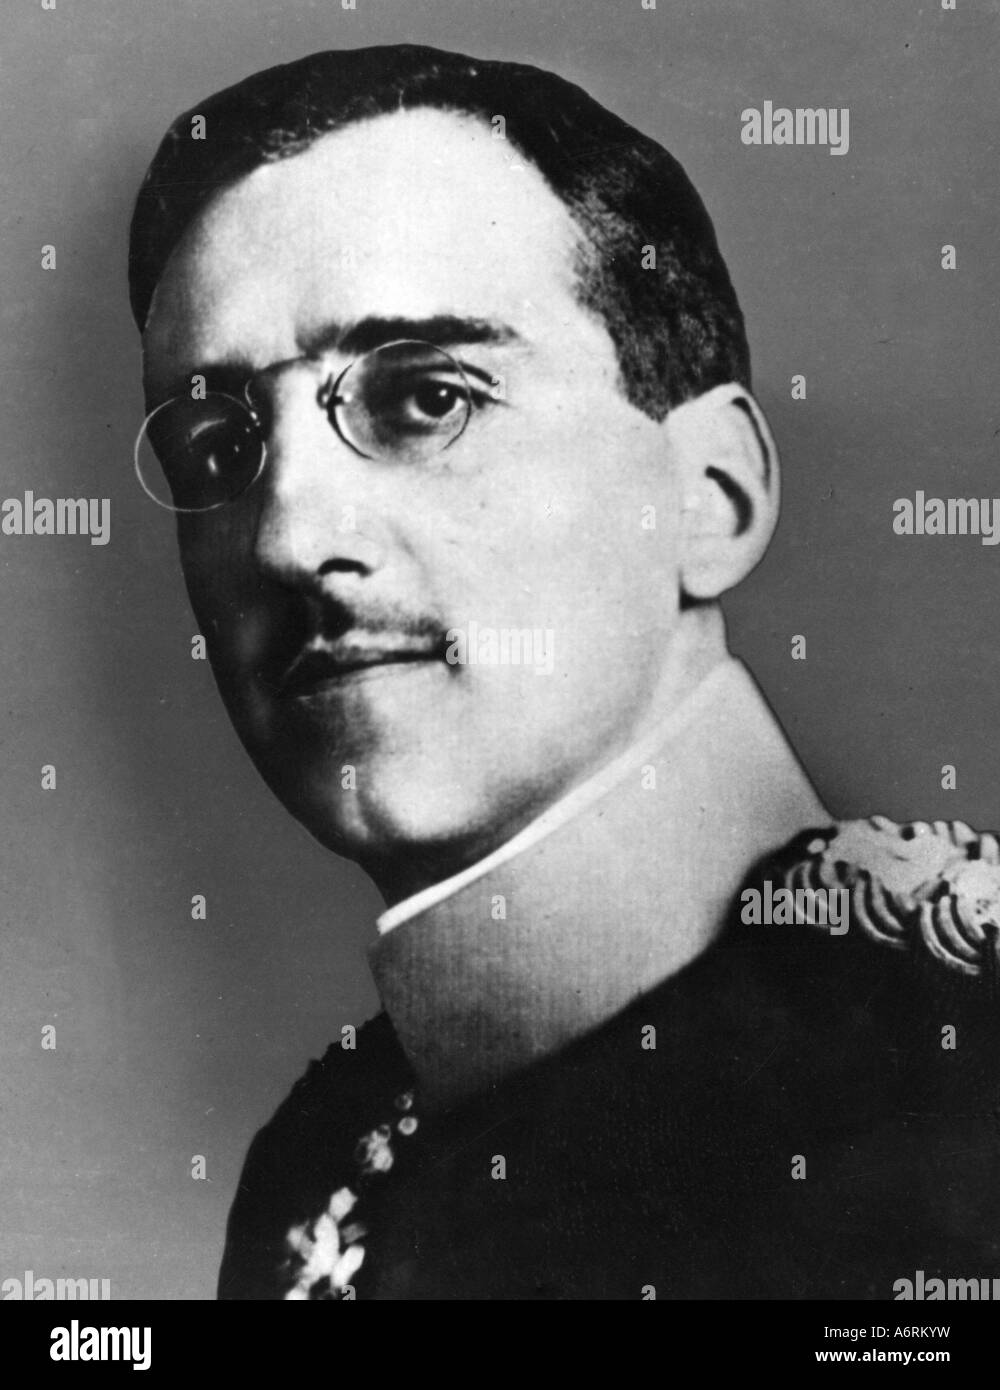 Alessandro I., 17.12.1888 - 9.10.1934, re di iugoslavia 16.8.1921 - 9.10.1934, ritratto, 1920s, 20s, Aleksandar ho Karadordevic, Foto Stock